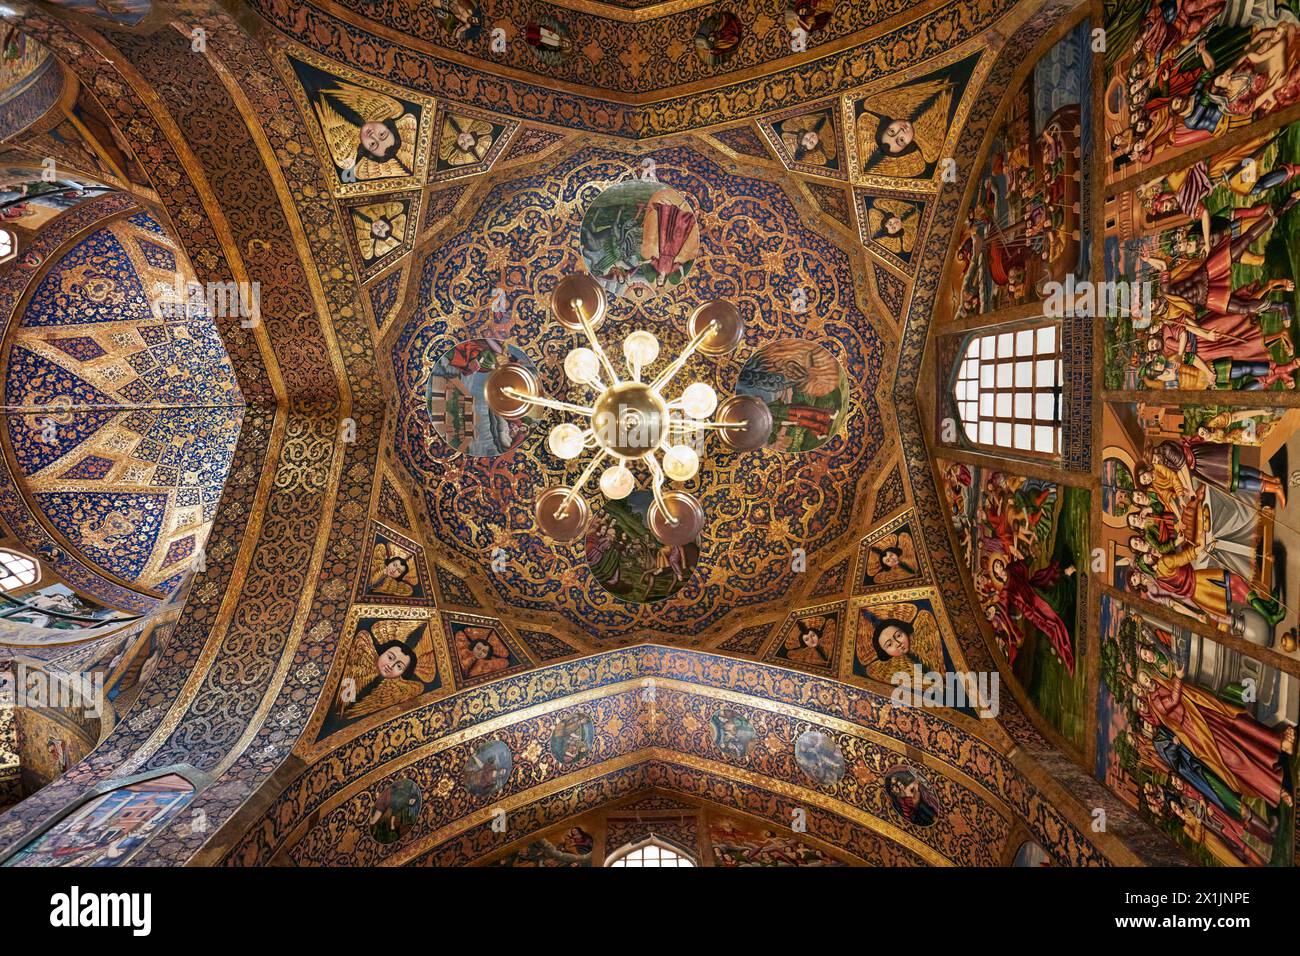 Blick von unten auf die vergoldete Kuppeldecke und Pendentive mit bemalten Cherub-Köpfen in der Heilig-Erlöser-Kathedrale (Vank-Kathedrale). Isfahan, Iran. Stockfoto